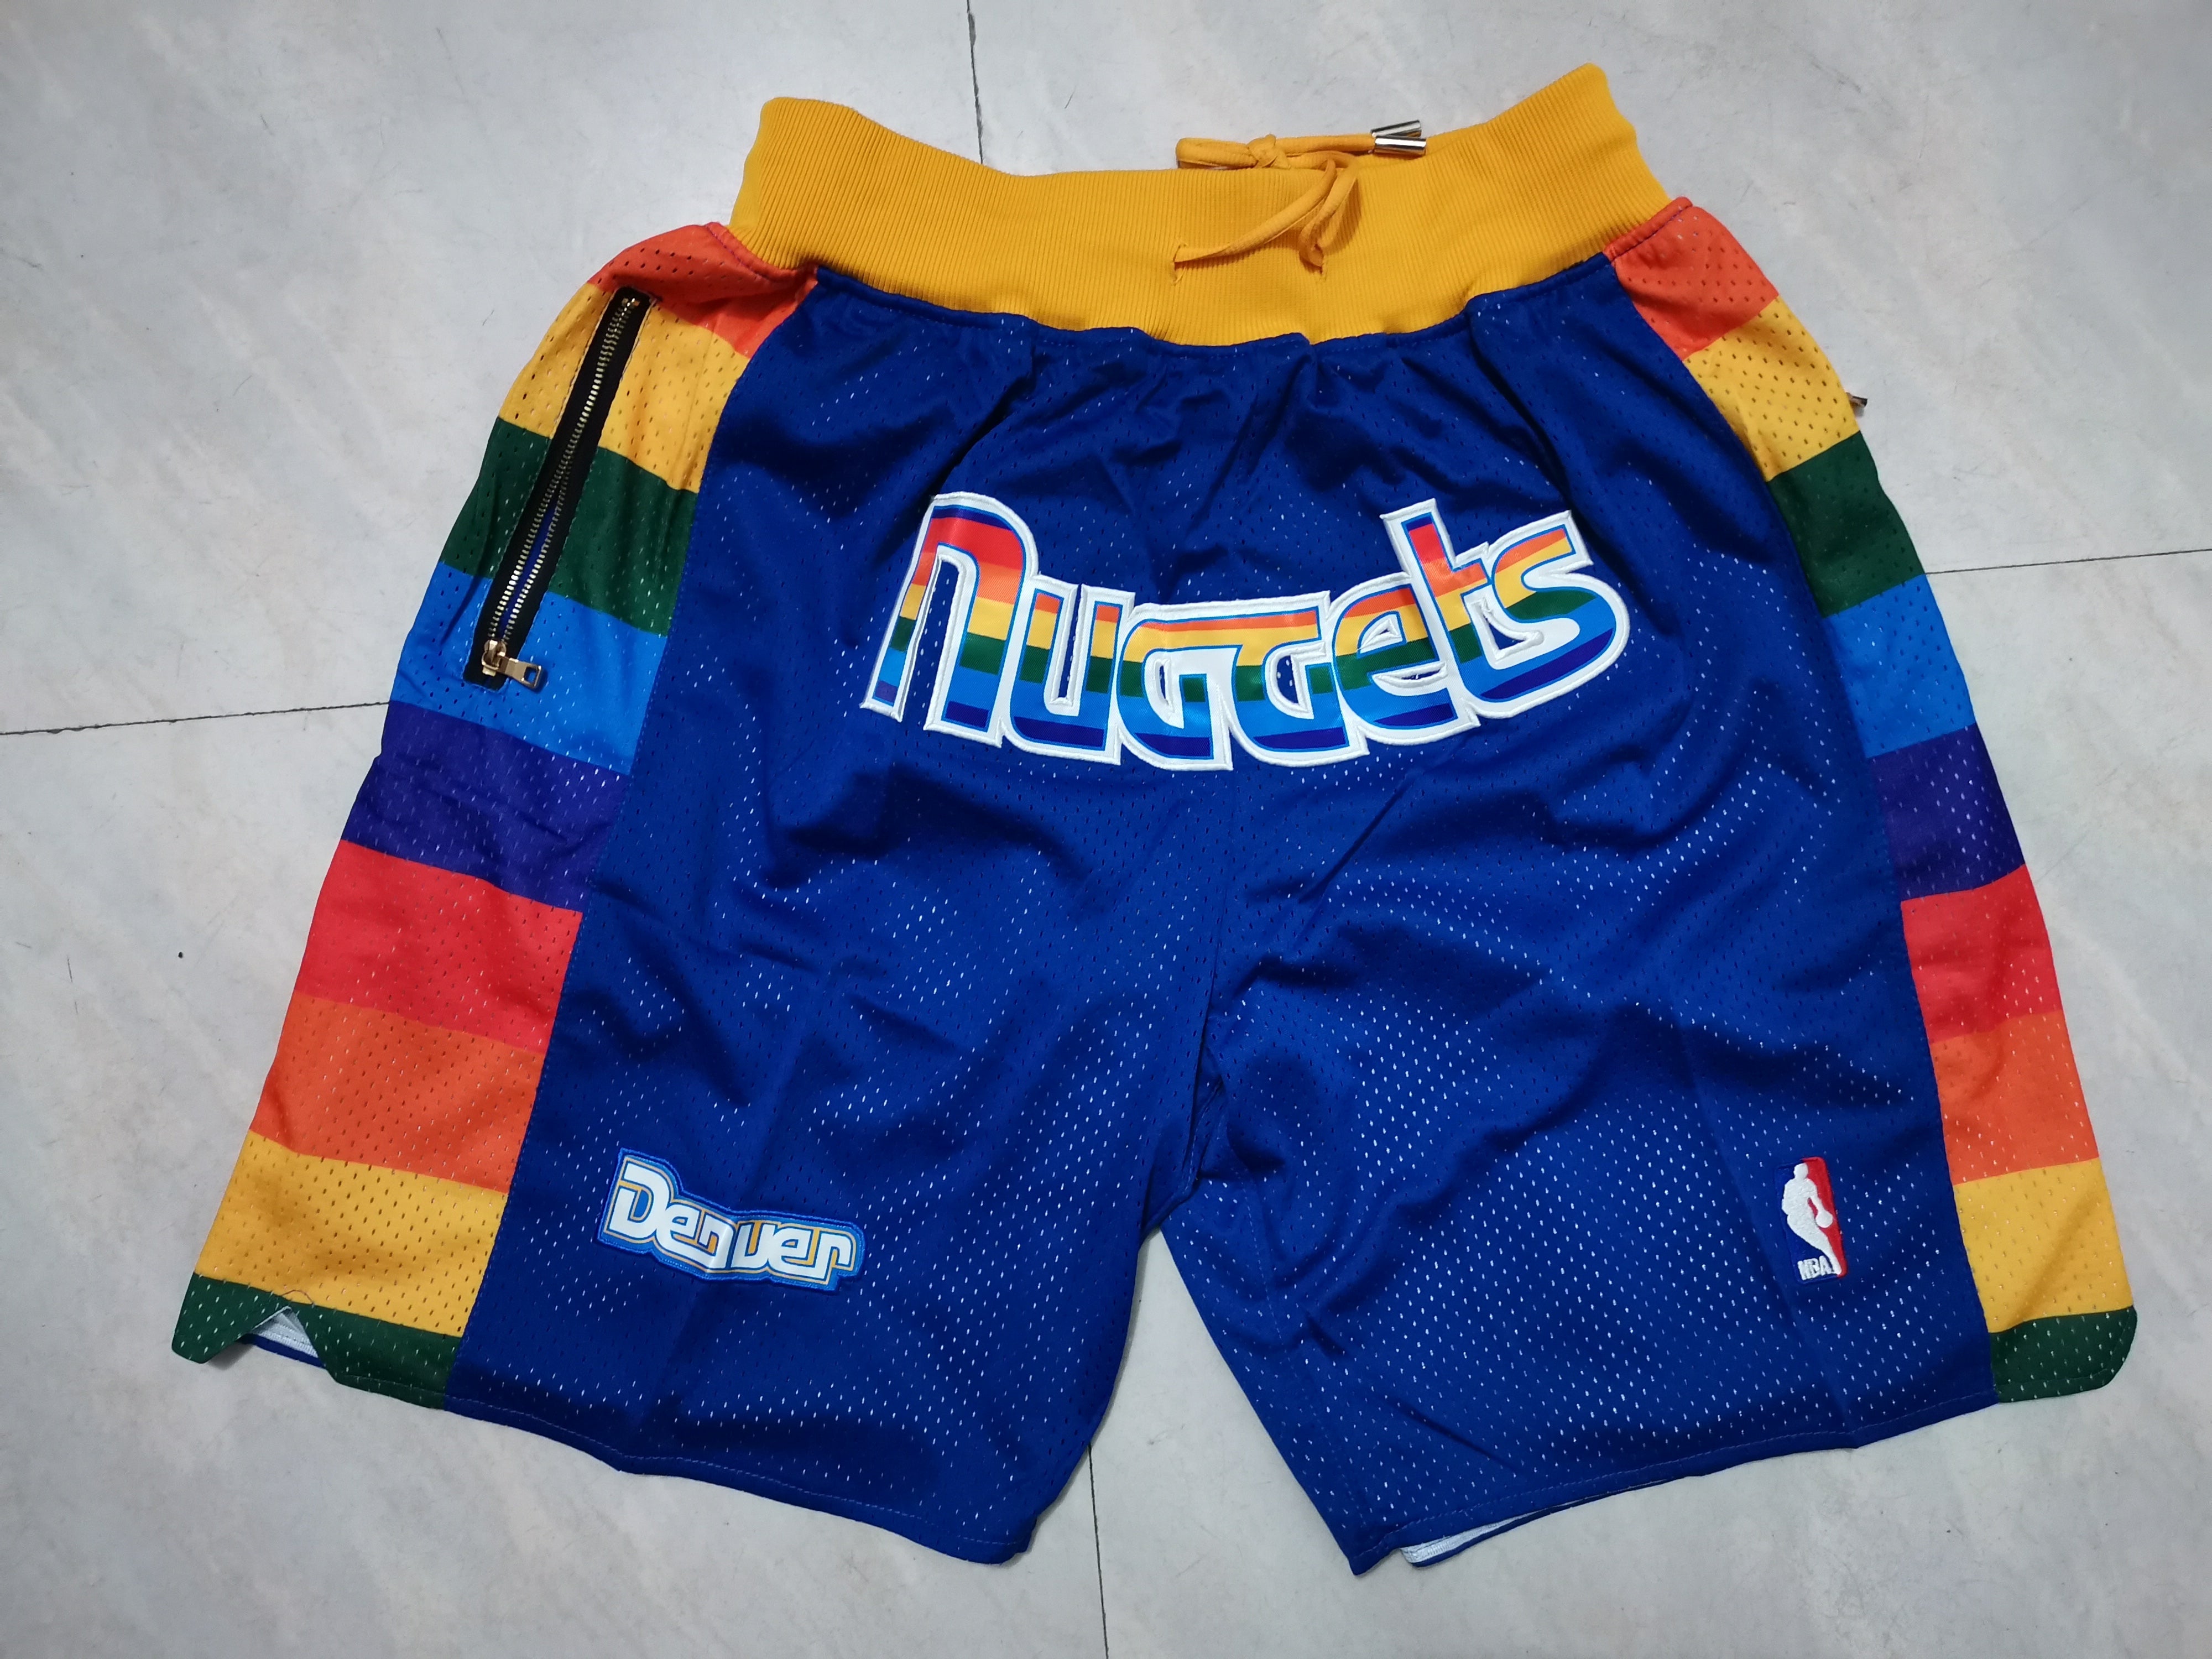 Denver nuggets blue shorts